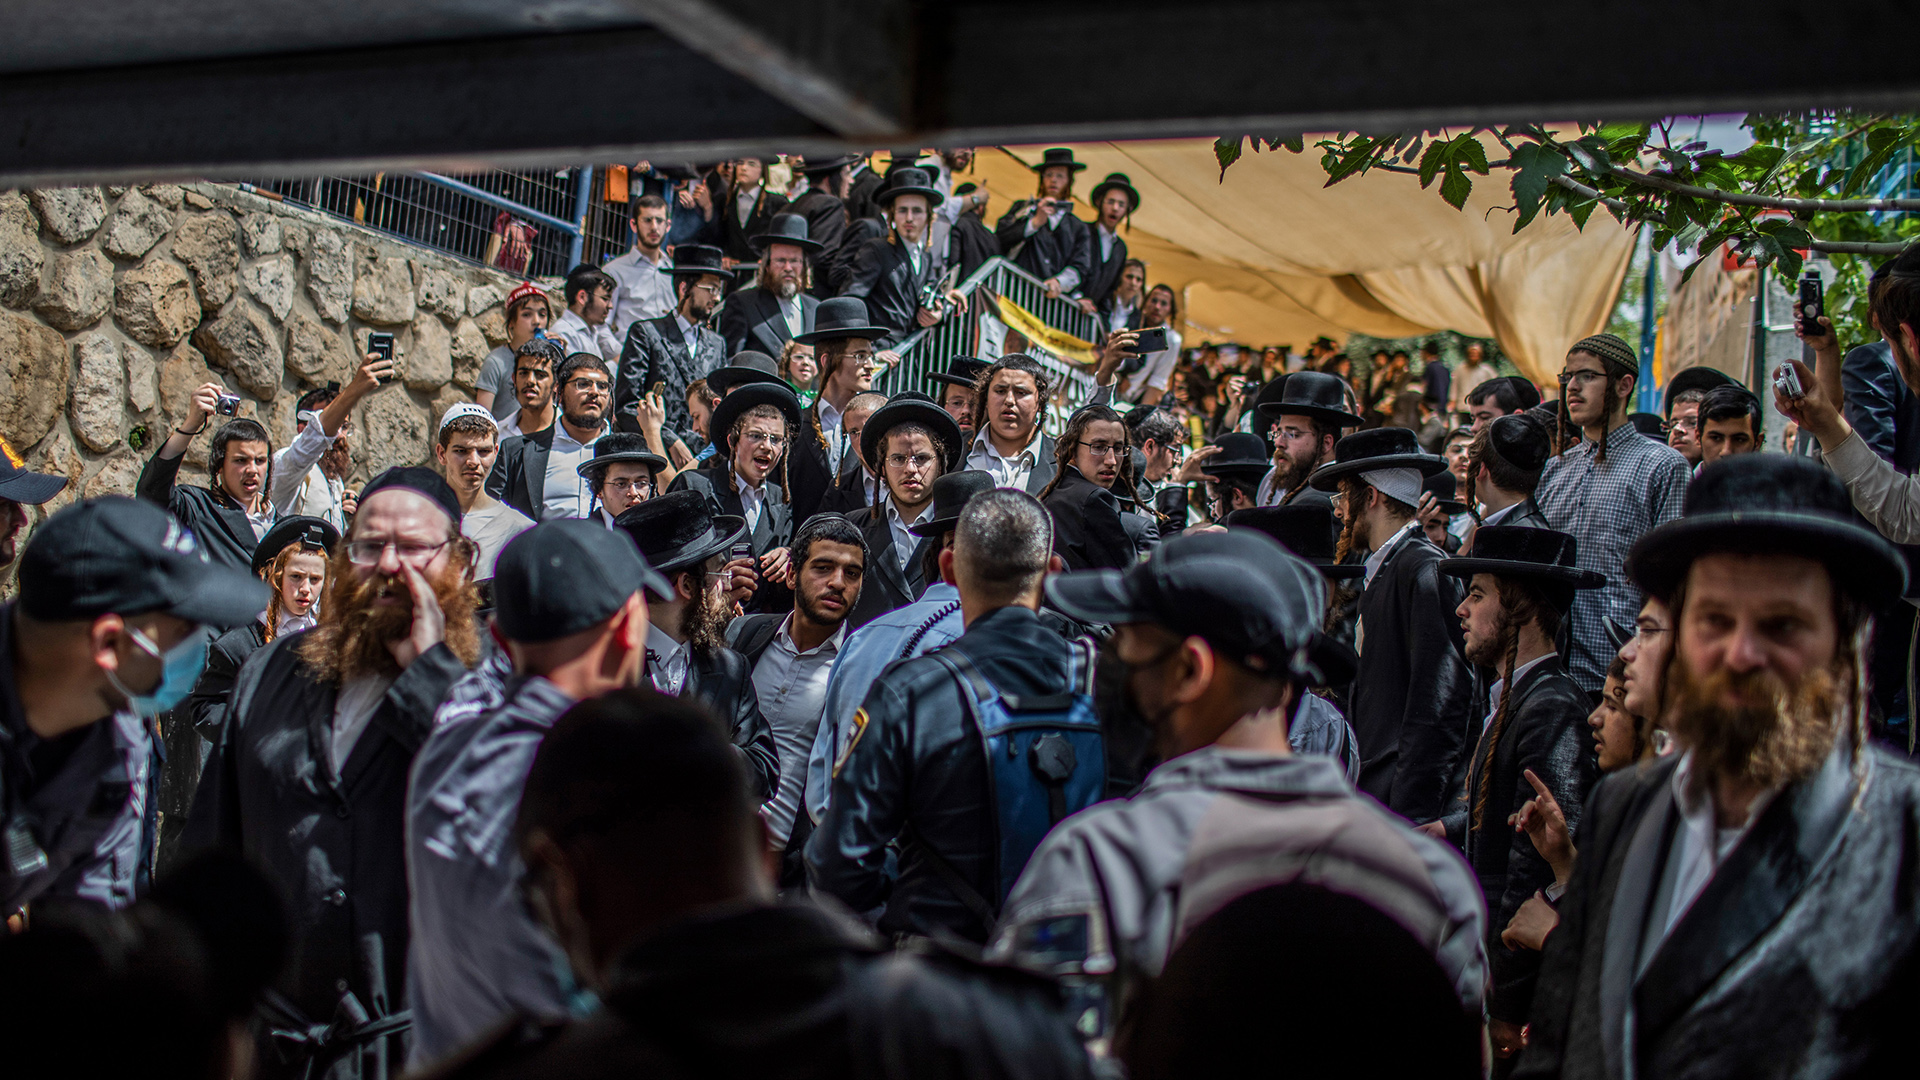 Orthodoxe Juden haben sich vor Sicherheitskräften an der Unglücksstelle, der jüdisch-orthodoxen Pilgerstätte auf dem Berg Meron versammelt. | dpa